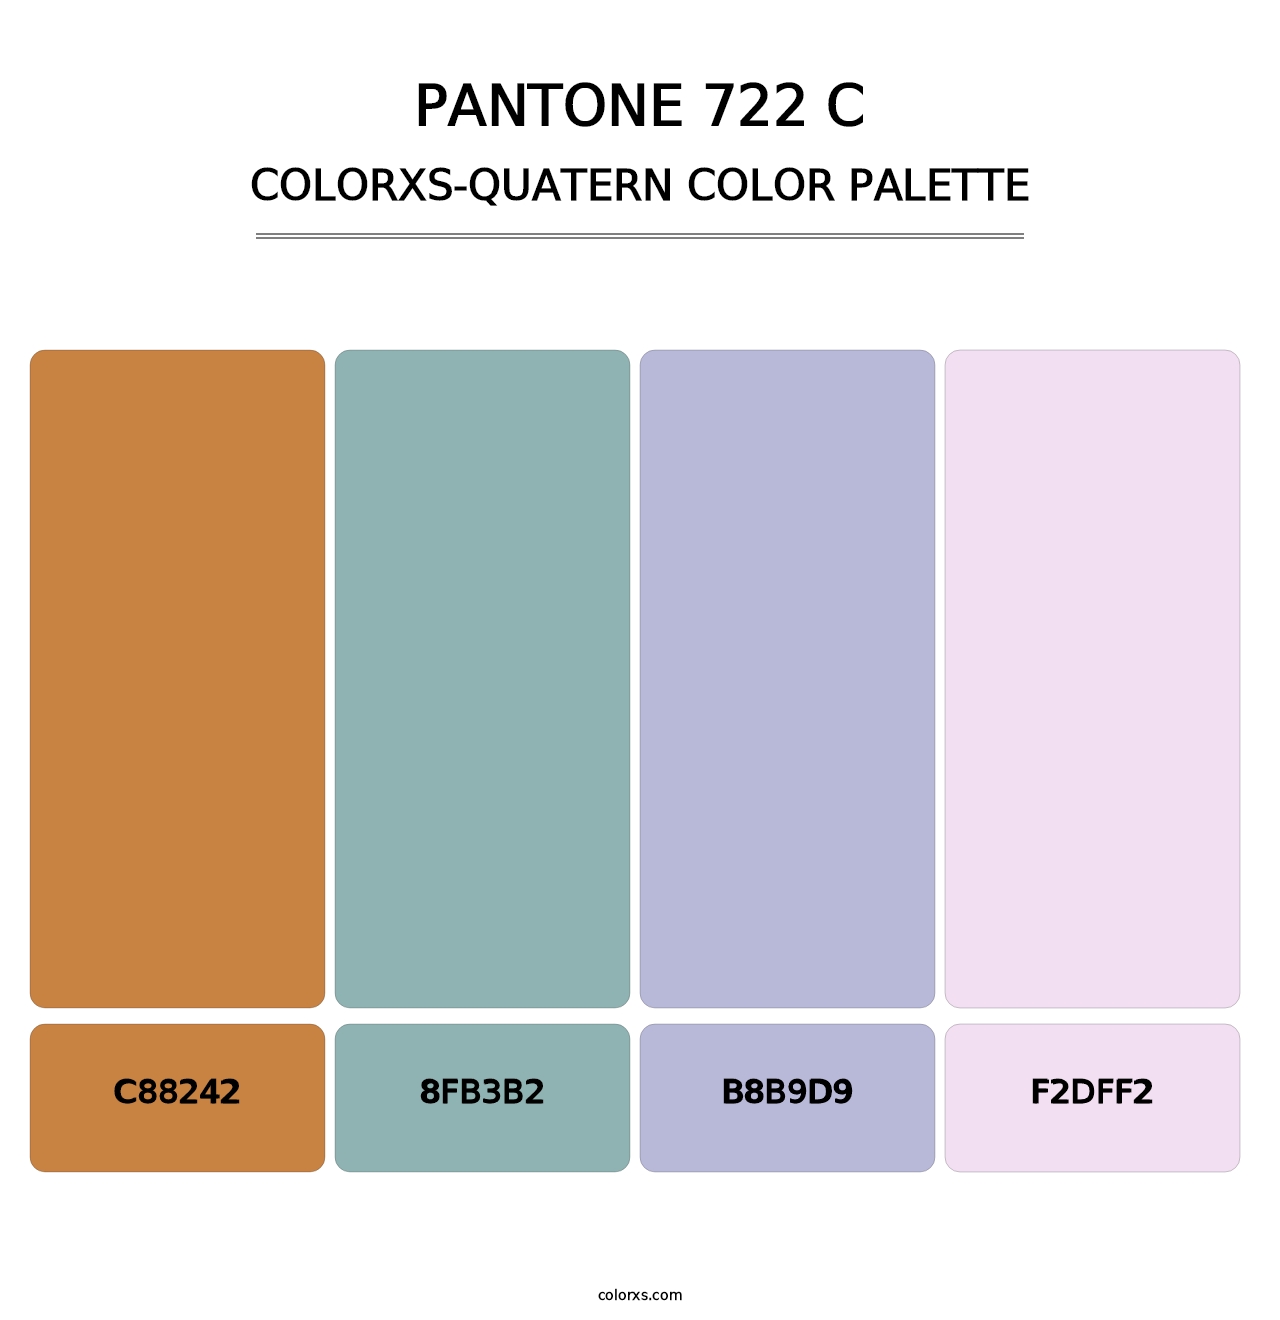 PANTONE 722 C - Colorxs Quatern Palette